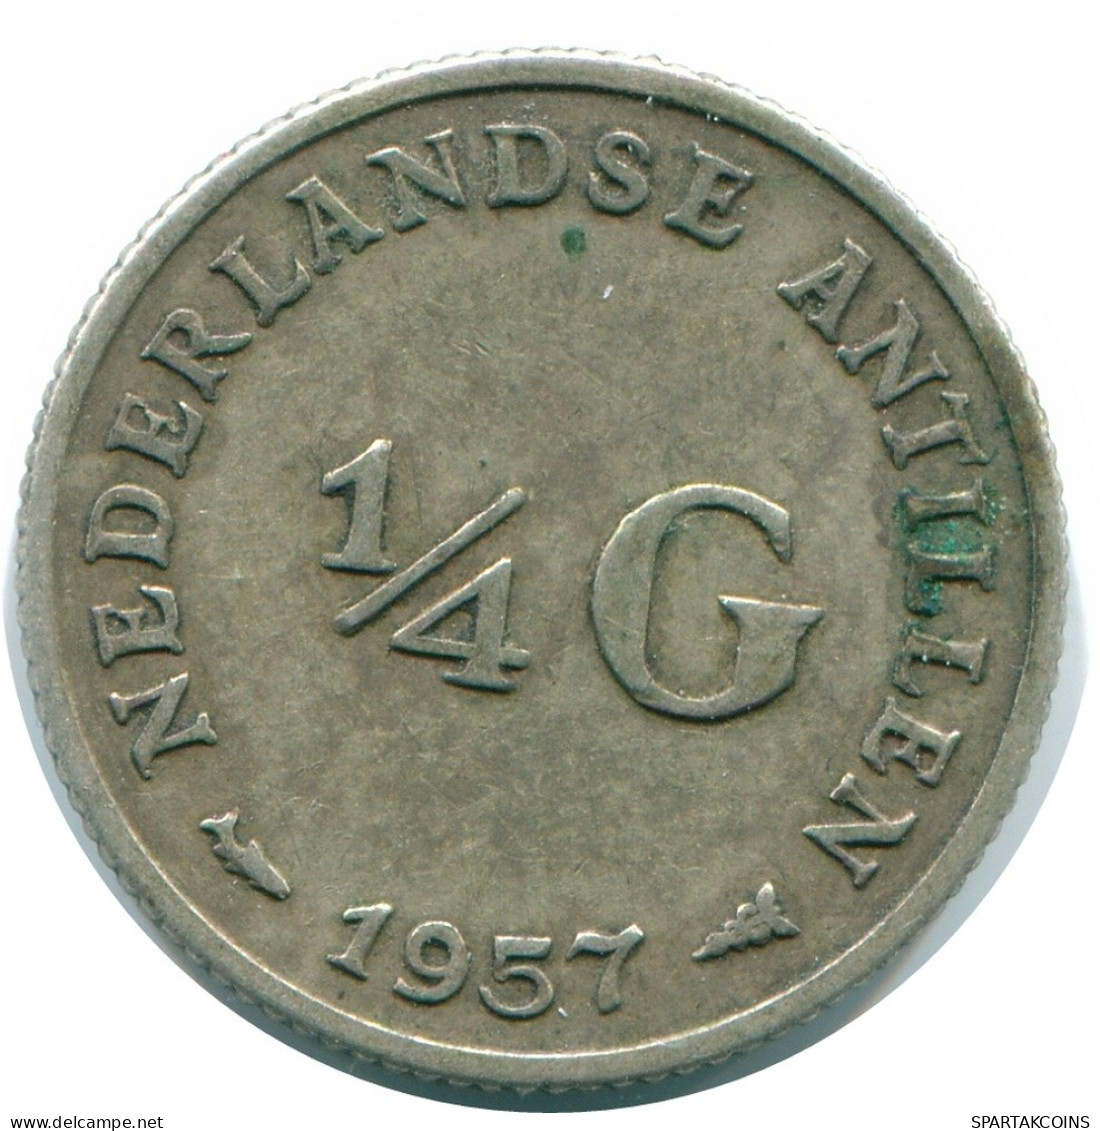 1/4 GULDEN 1957 NIEDERLÄNDISCHE ANTILLEN SILBER Koloniale Münze #NL10998.4.D.A - Antilles Néerlandaises